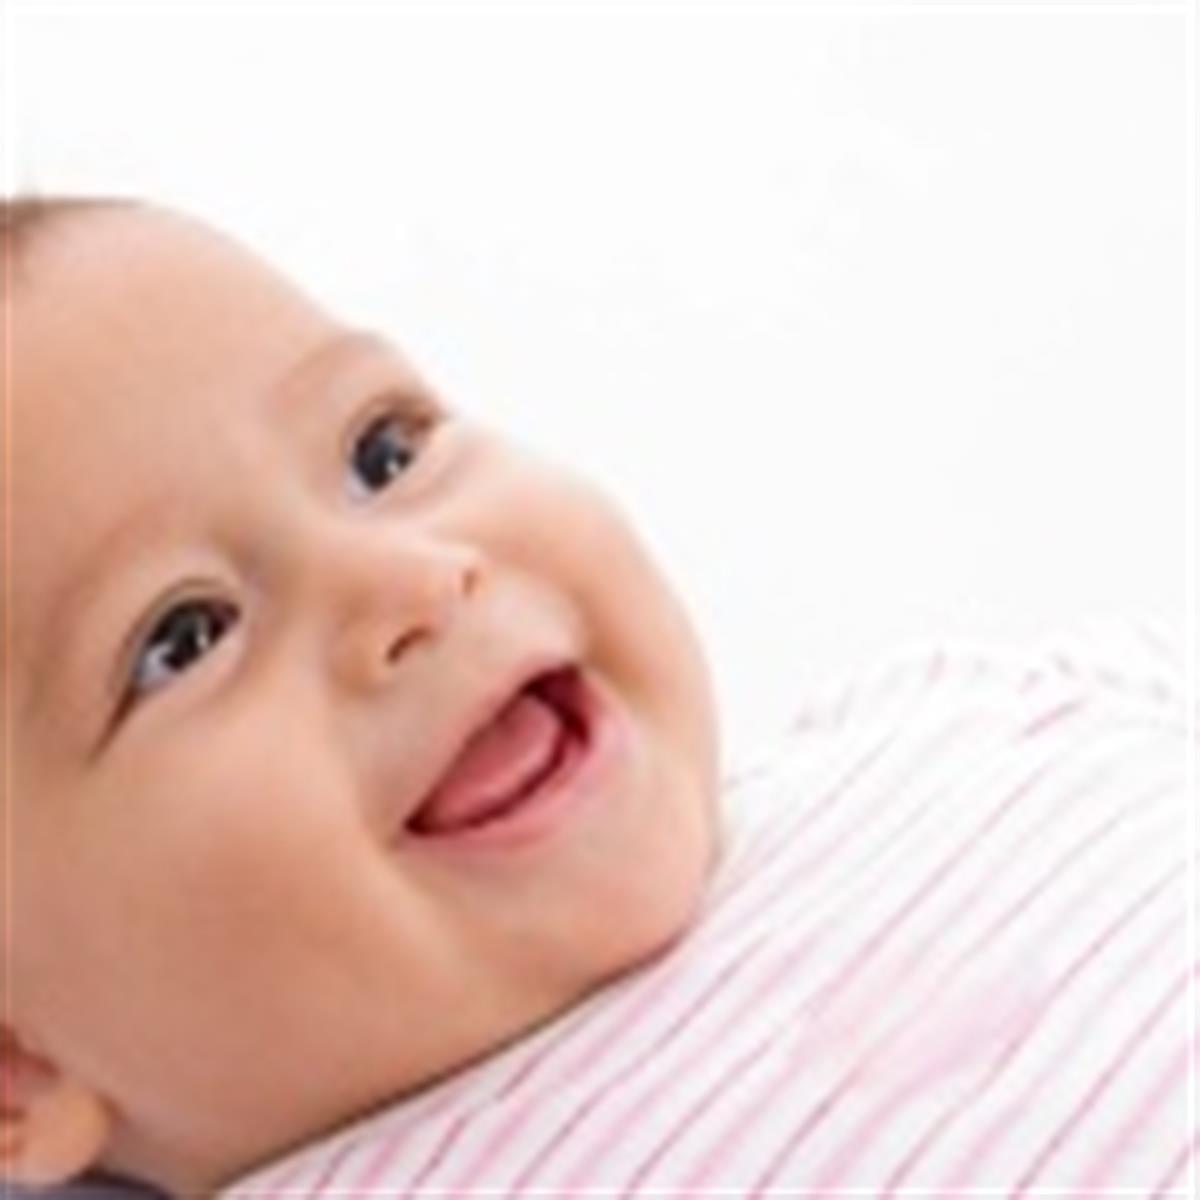 Bebés (0 a 1 año), Desarrollo infantil, NCBDDD